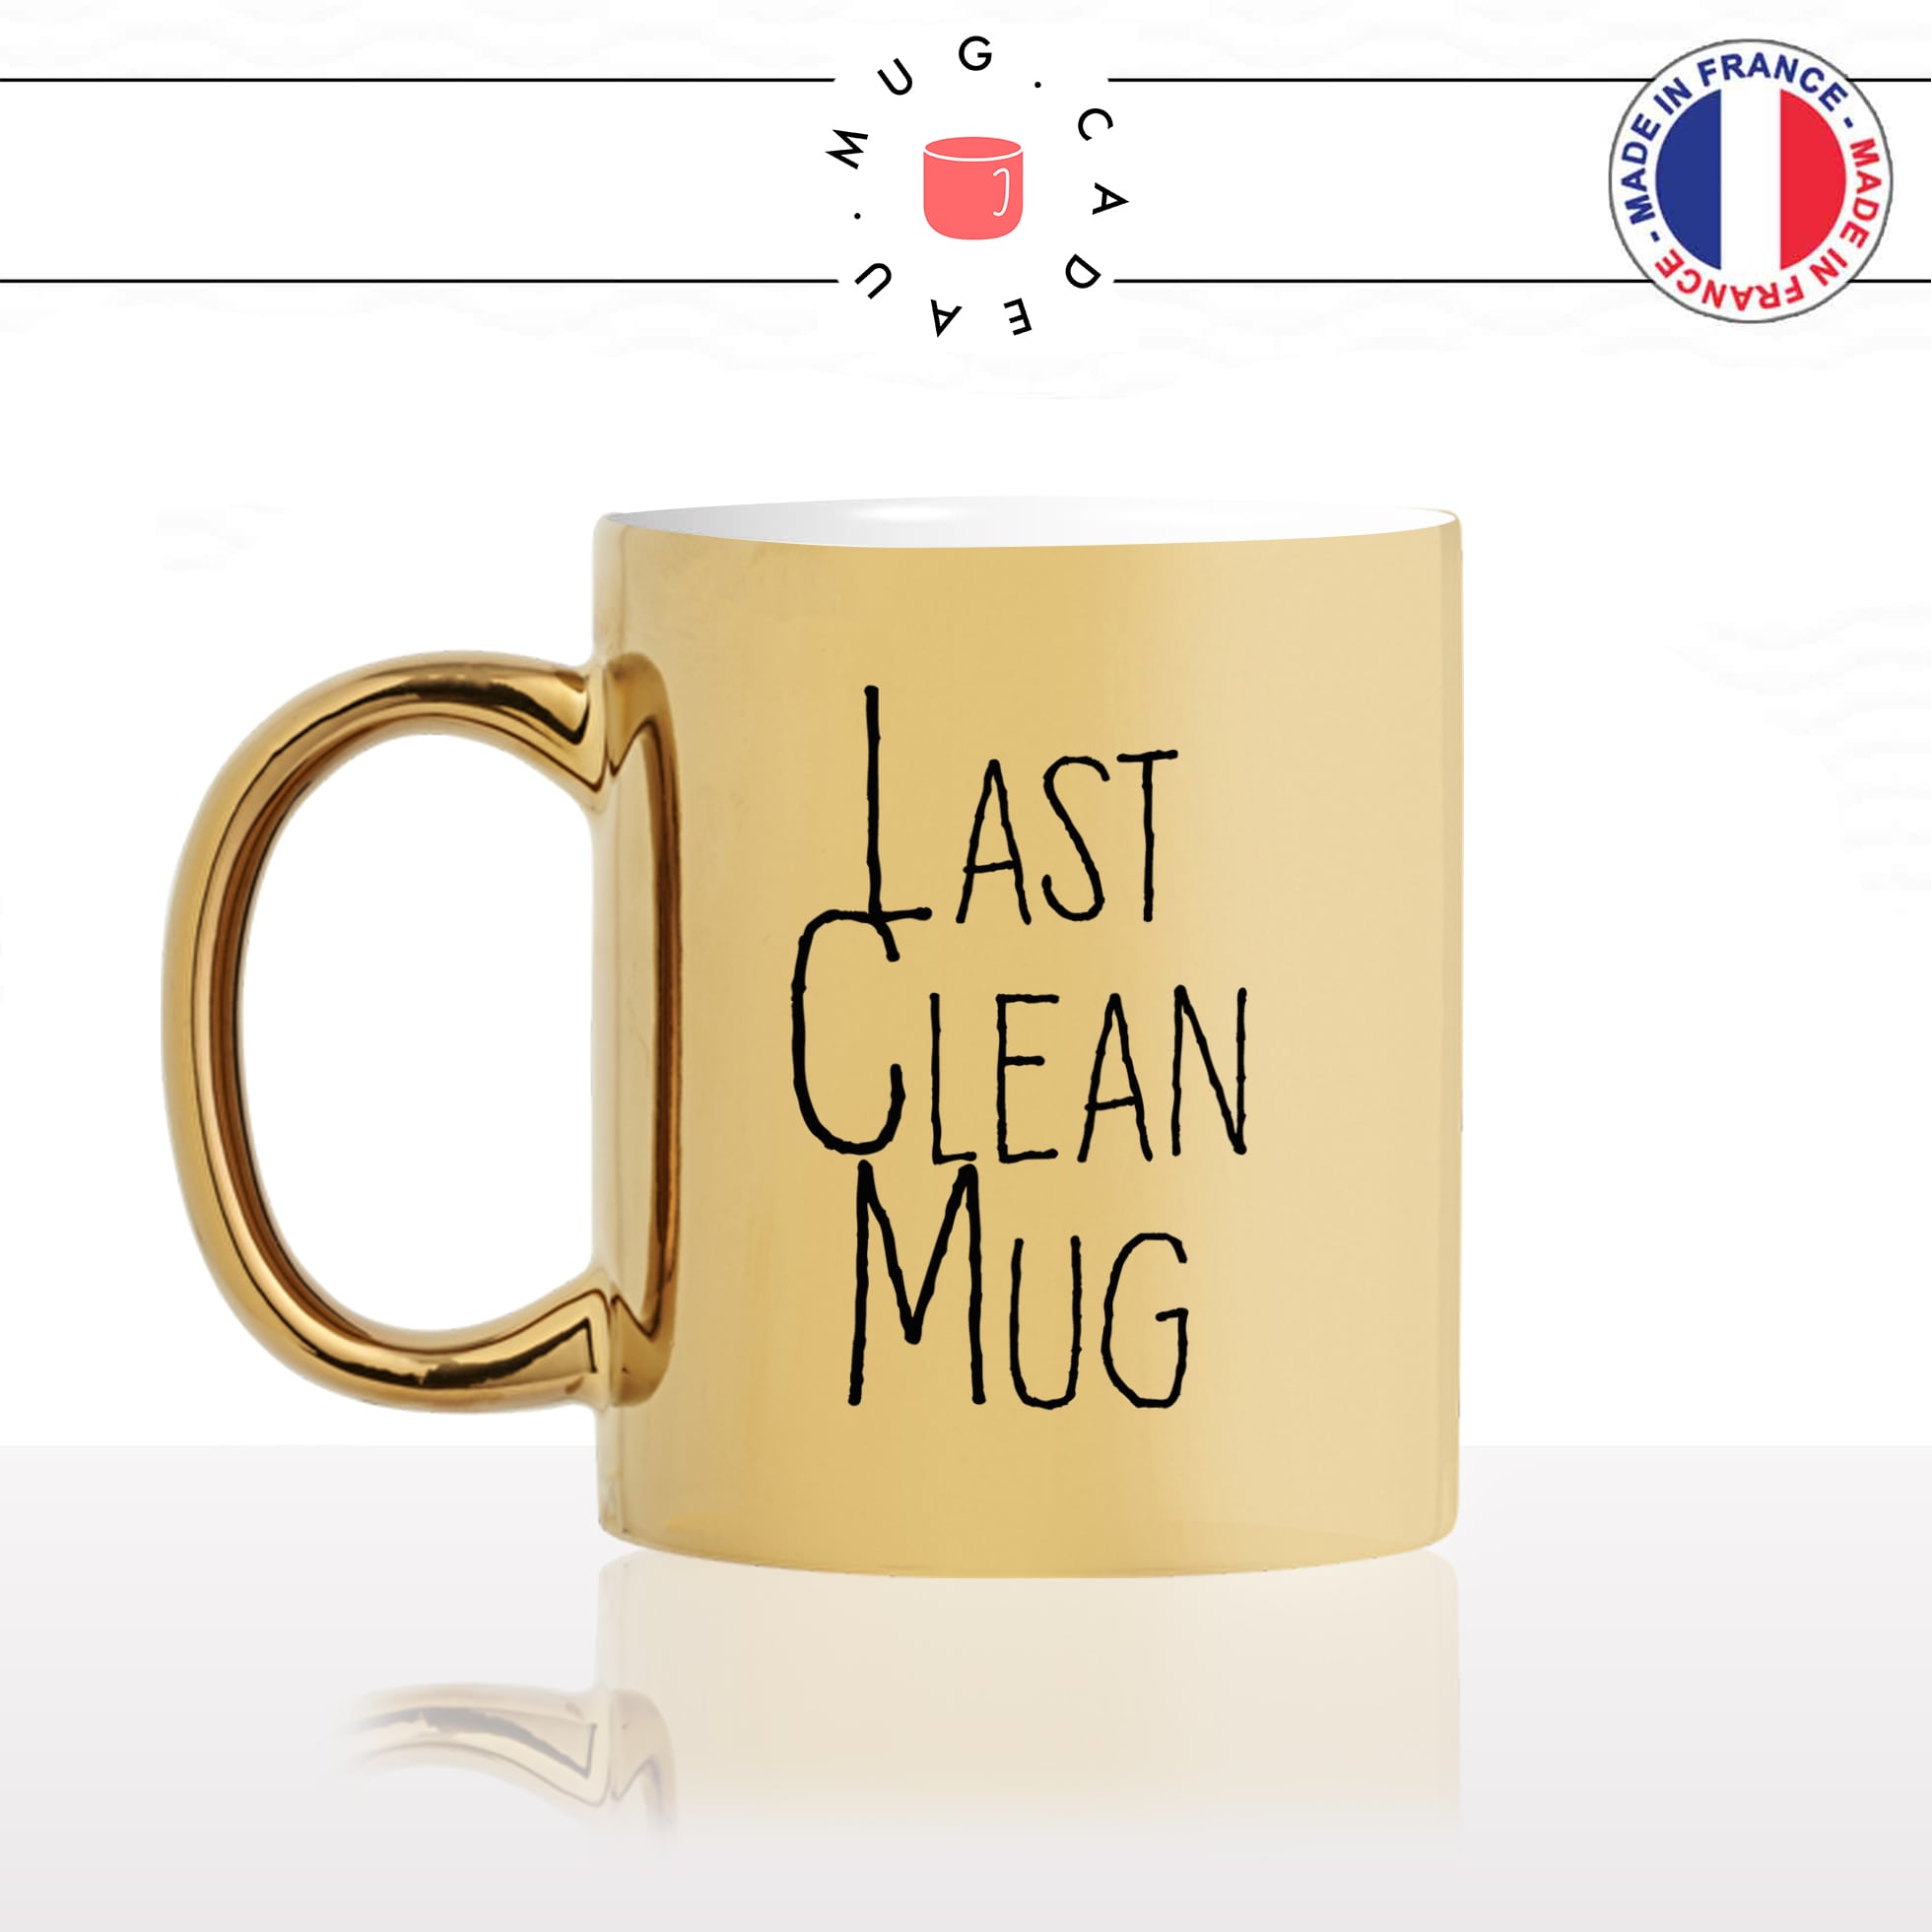 mug-tasse-doré-or-gold-last-clean-mug-dernier-propre-verre-tasse-cup-original-humour-fun-idée-cadeau-personnalisé-café-thé-min